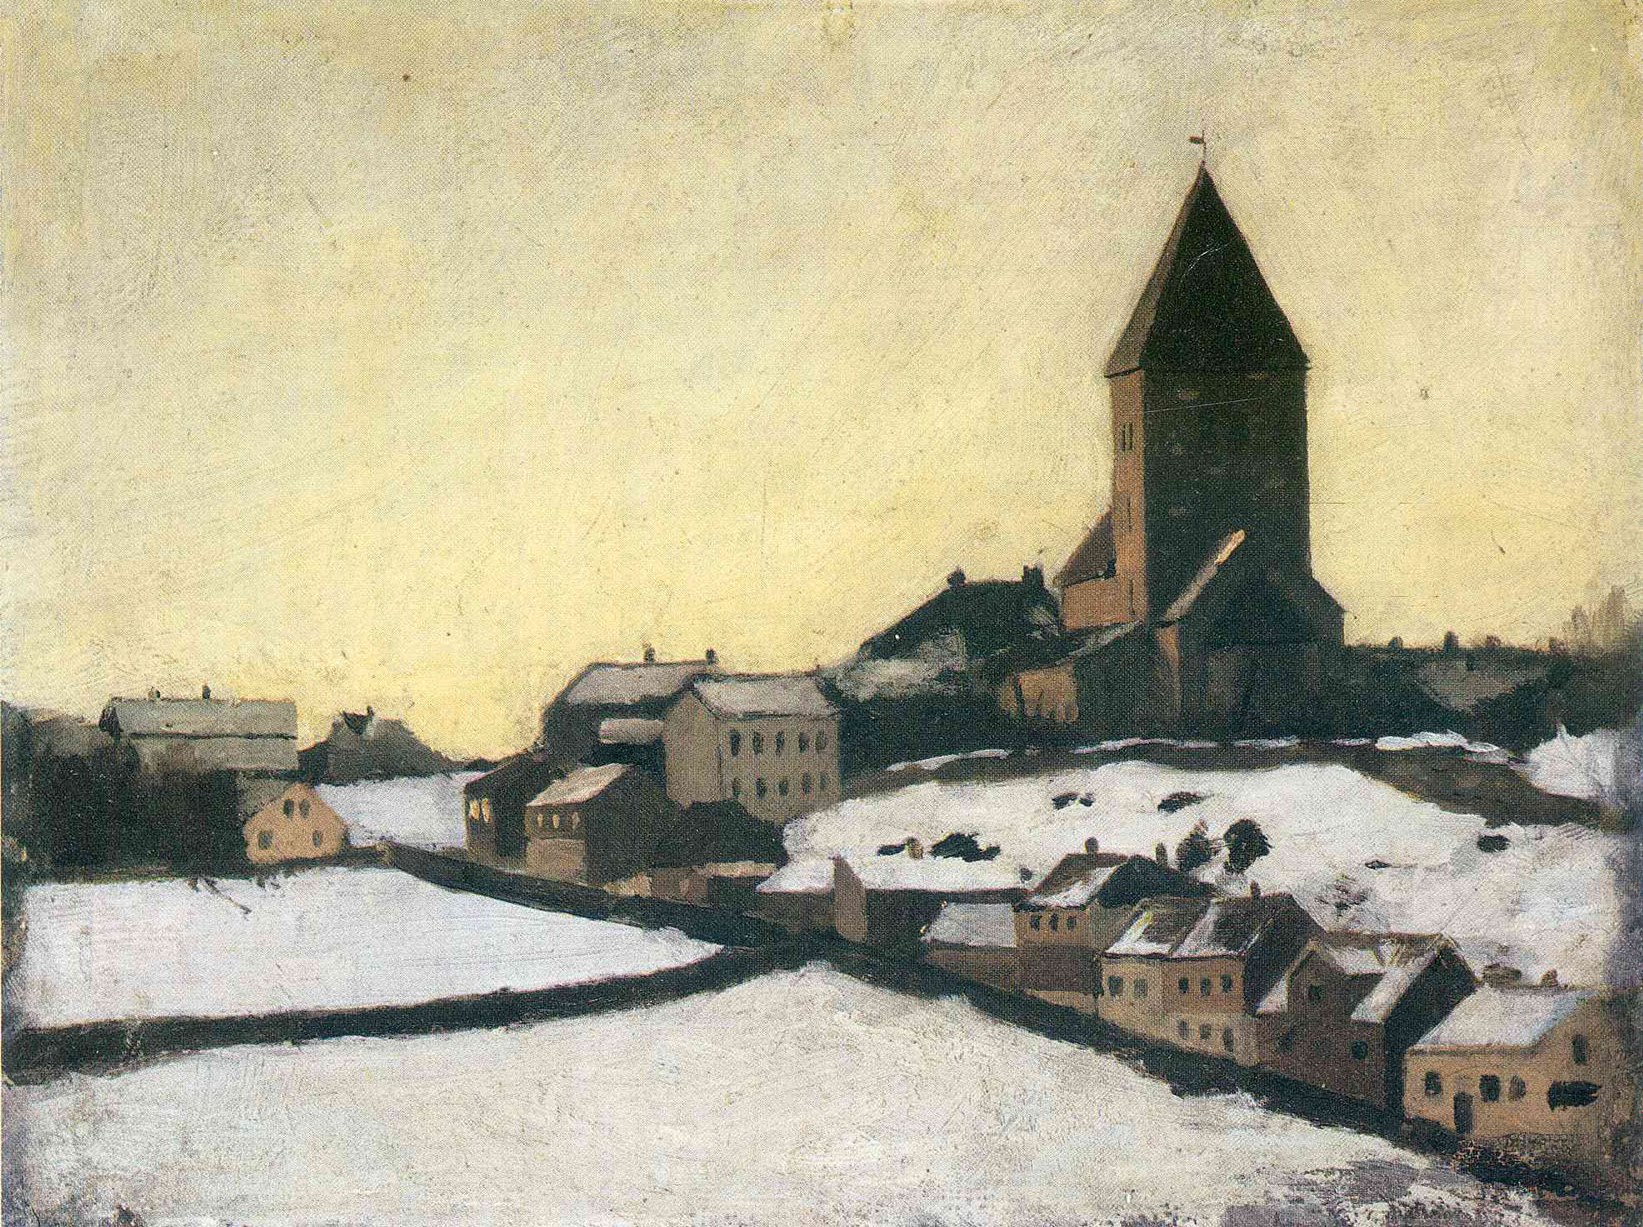 Эдвард Мунк. "Старая церковь в Акере". Музей Мунка, Осло.